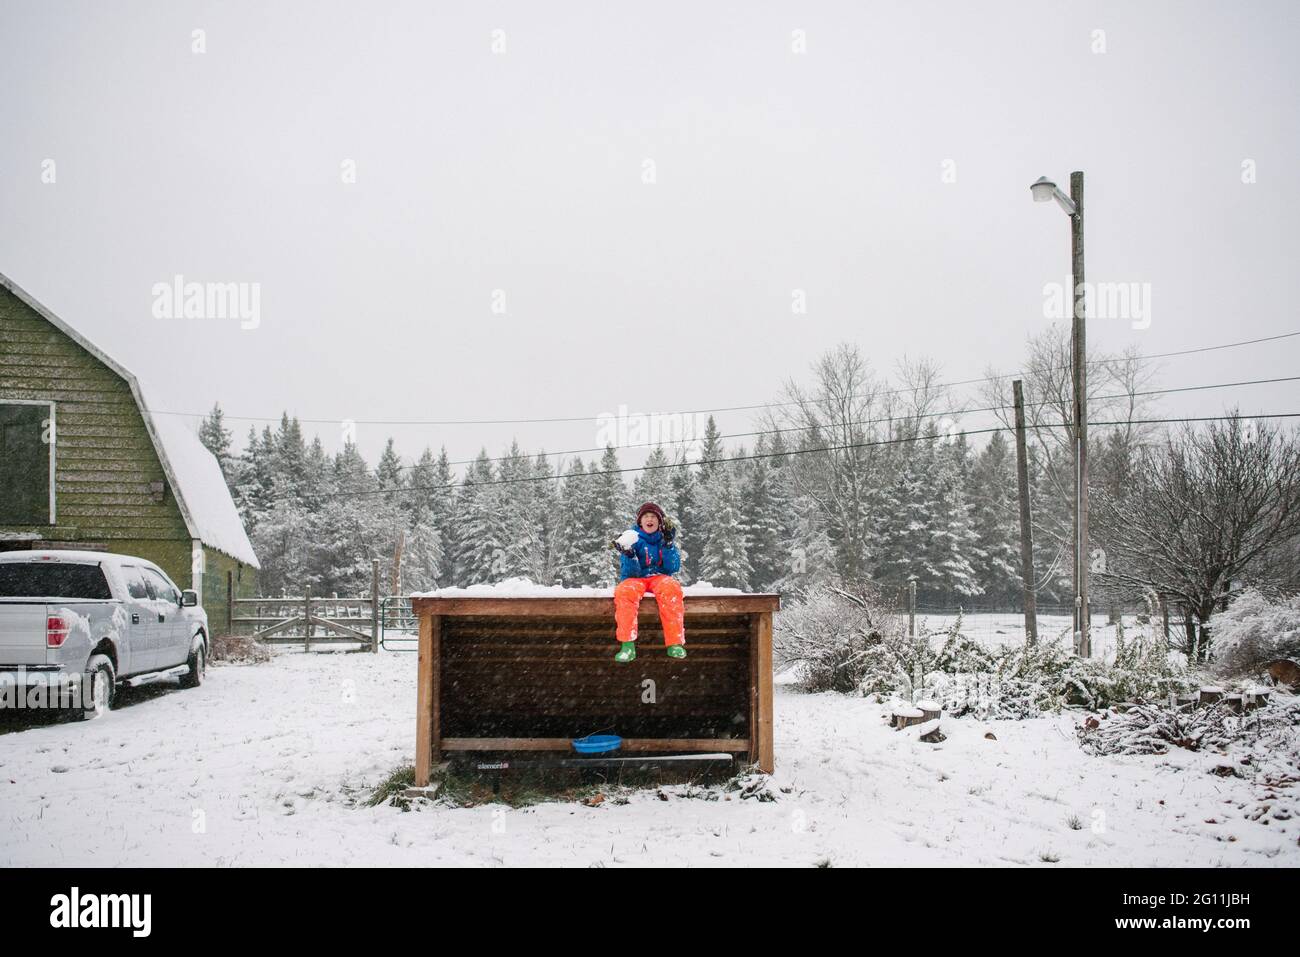 Kanada, Ontario, Junge spielt im Schnee Stockfoto